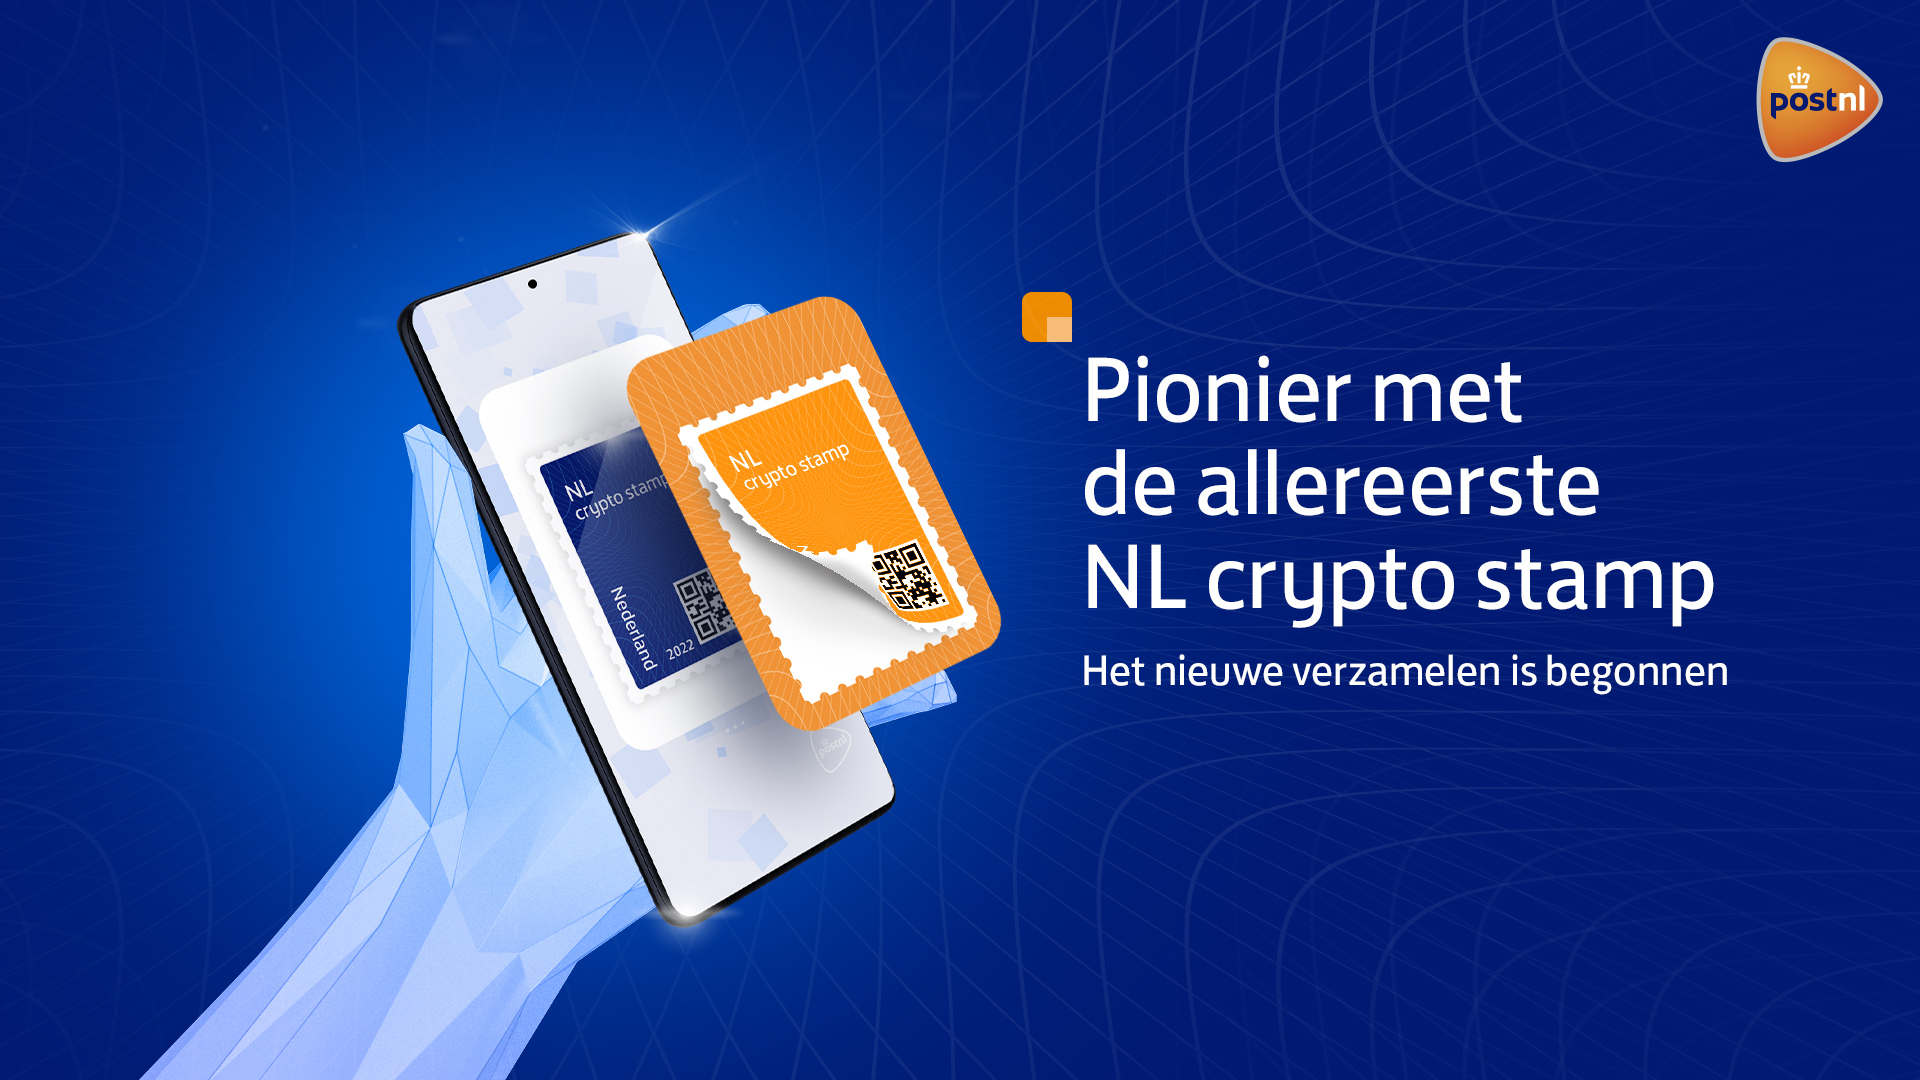 Grootste Nederlandse Postbedrijf PostNL lanceert Crypto postzegel